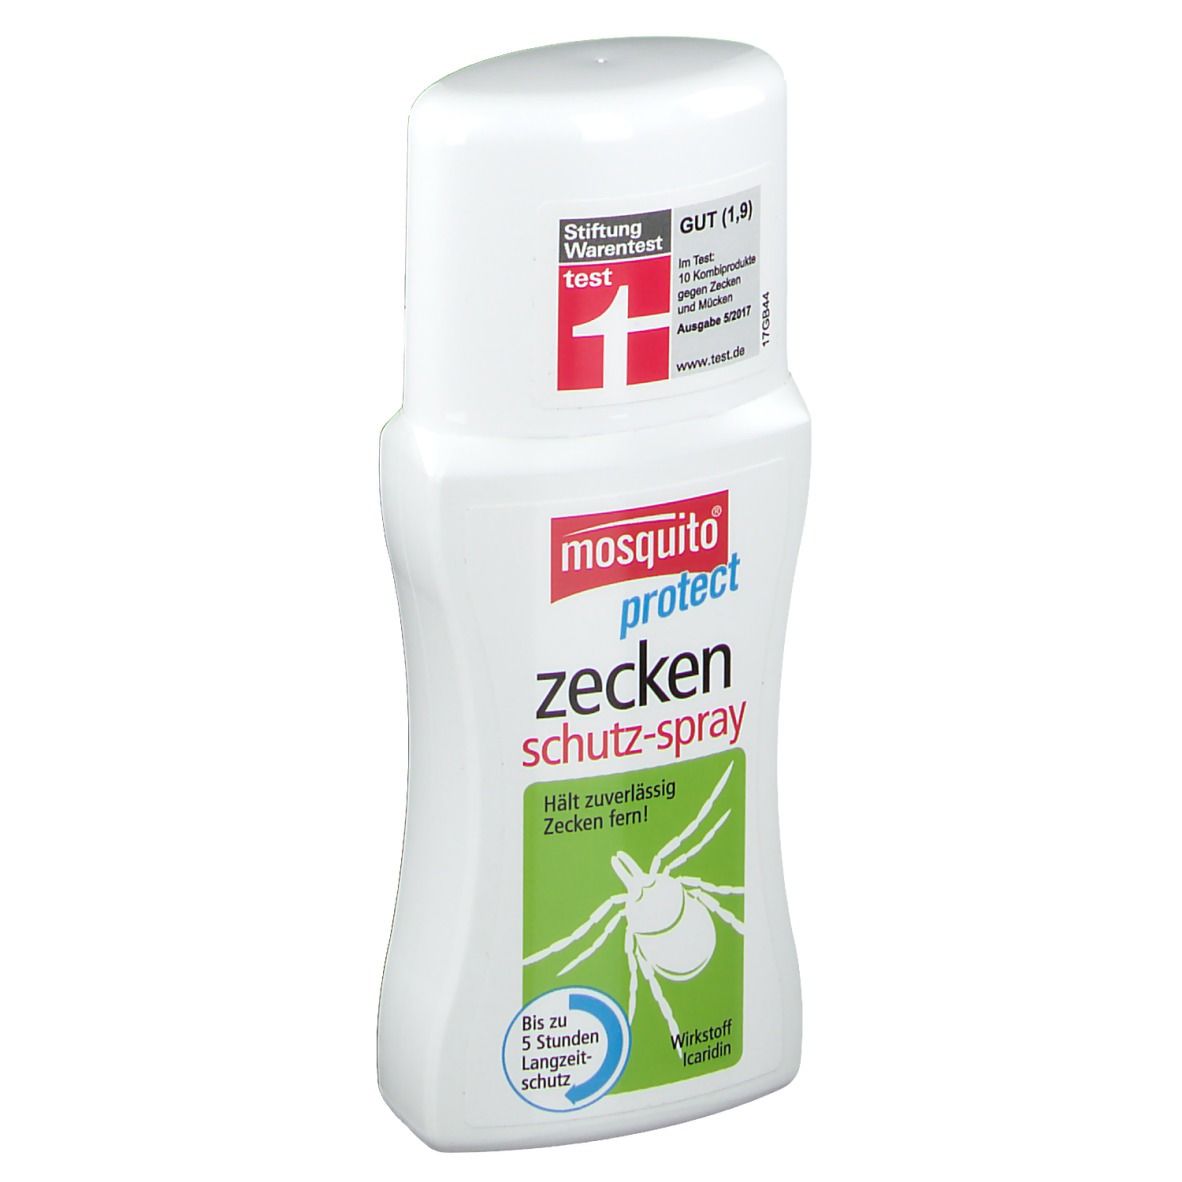 mosquito® Zeckenschutz-Spray protect